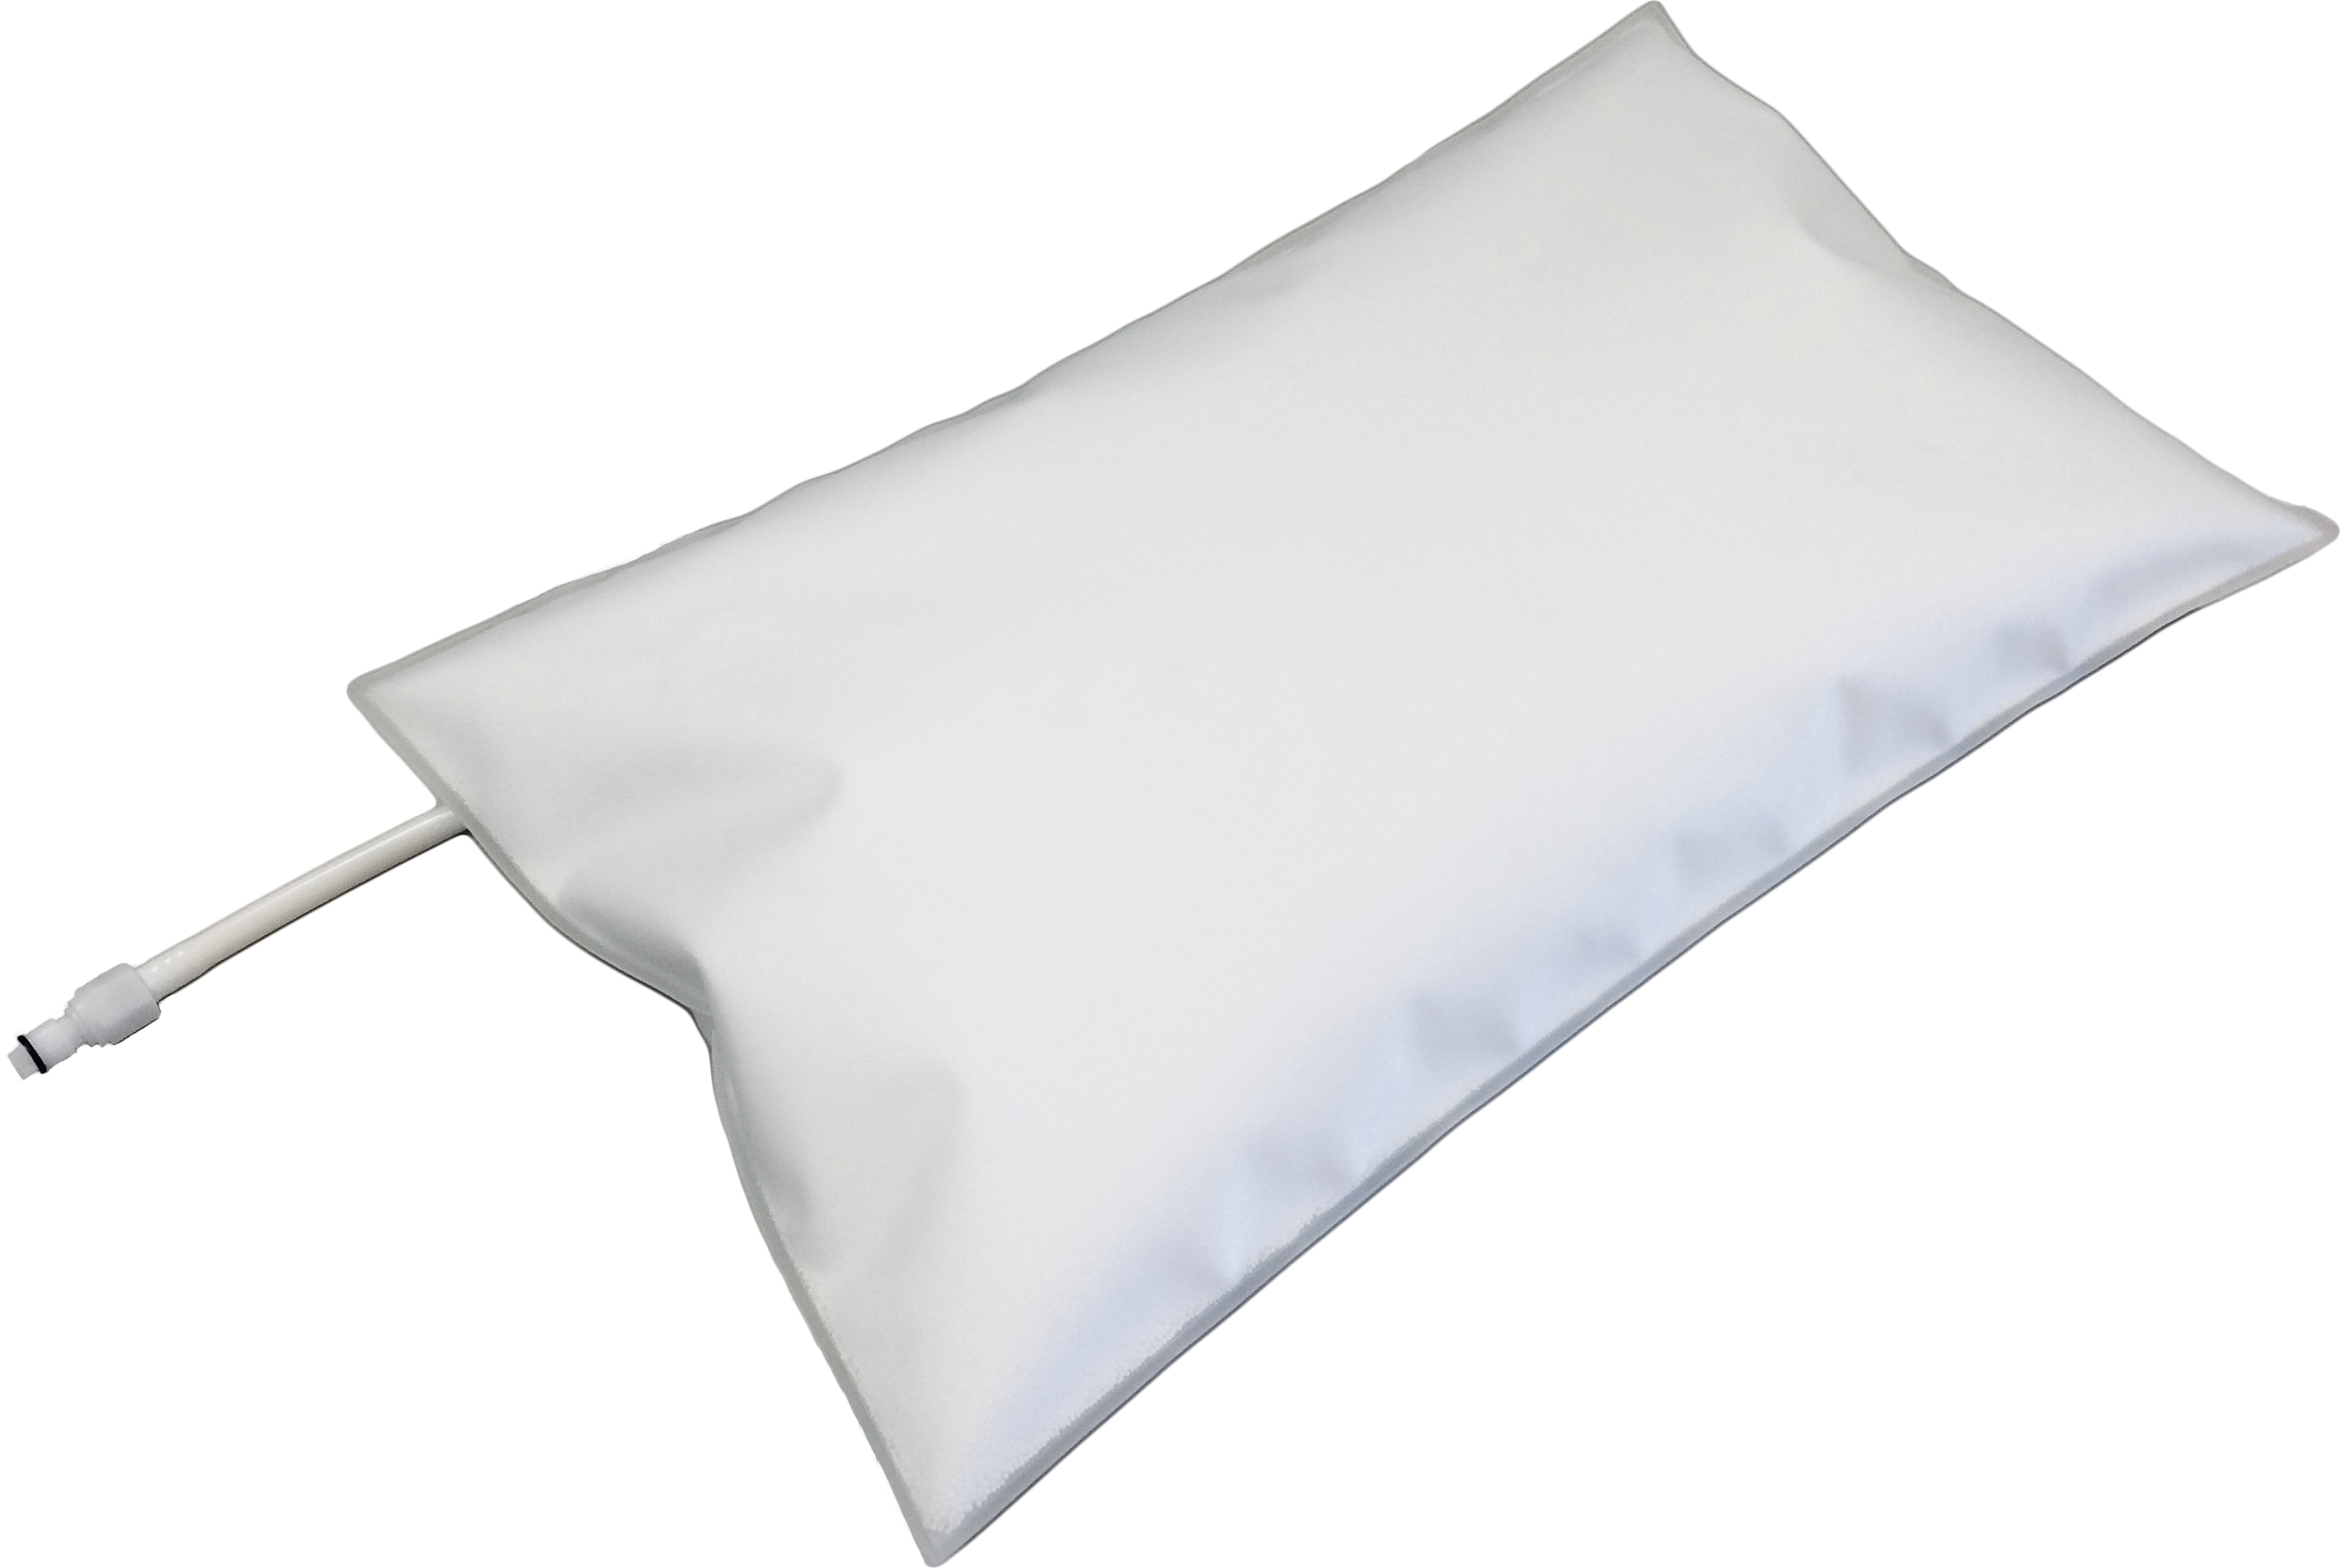 Produktbild des PearlFit Cushion Vac ohne Hintergrund